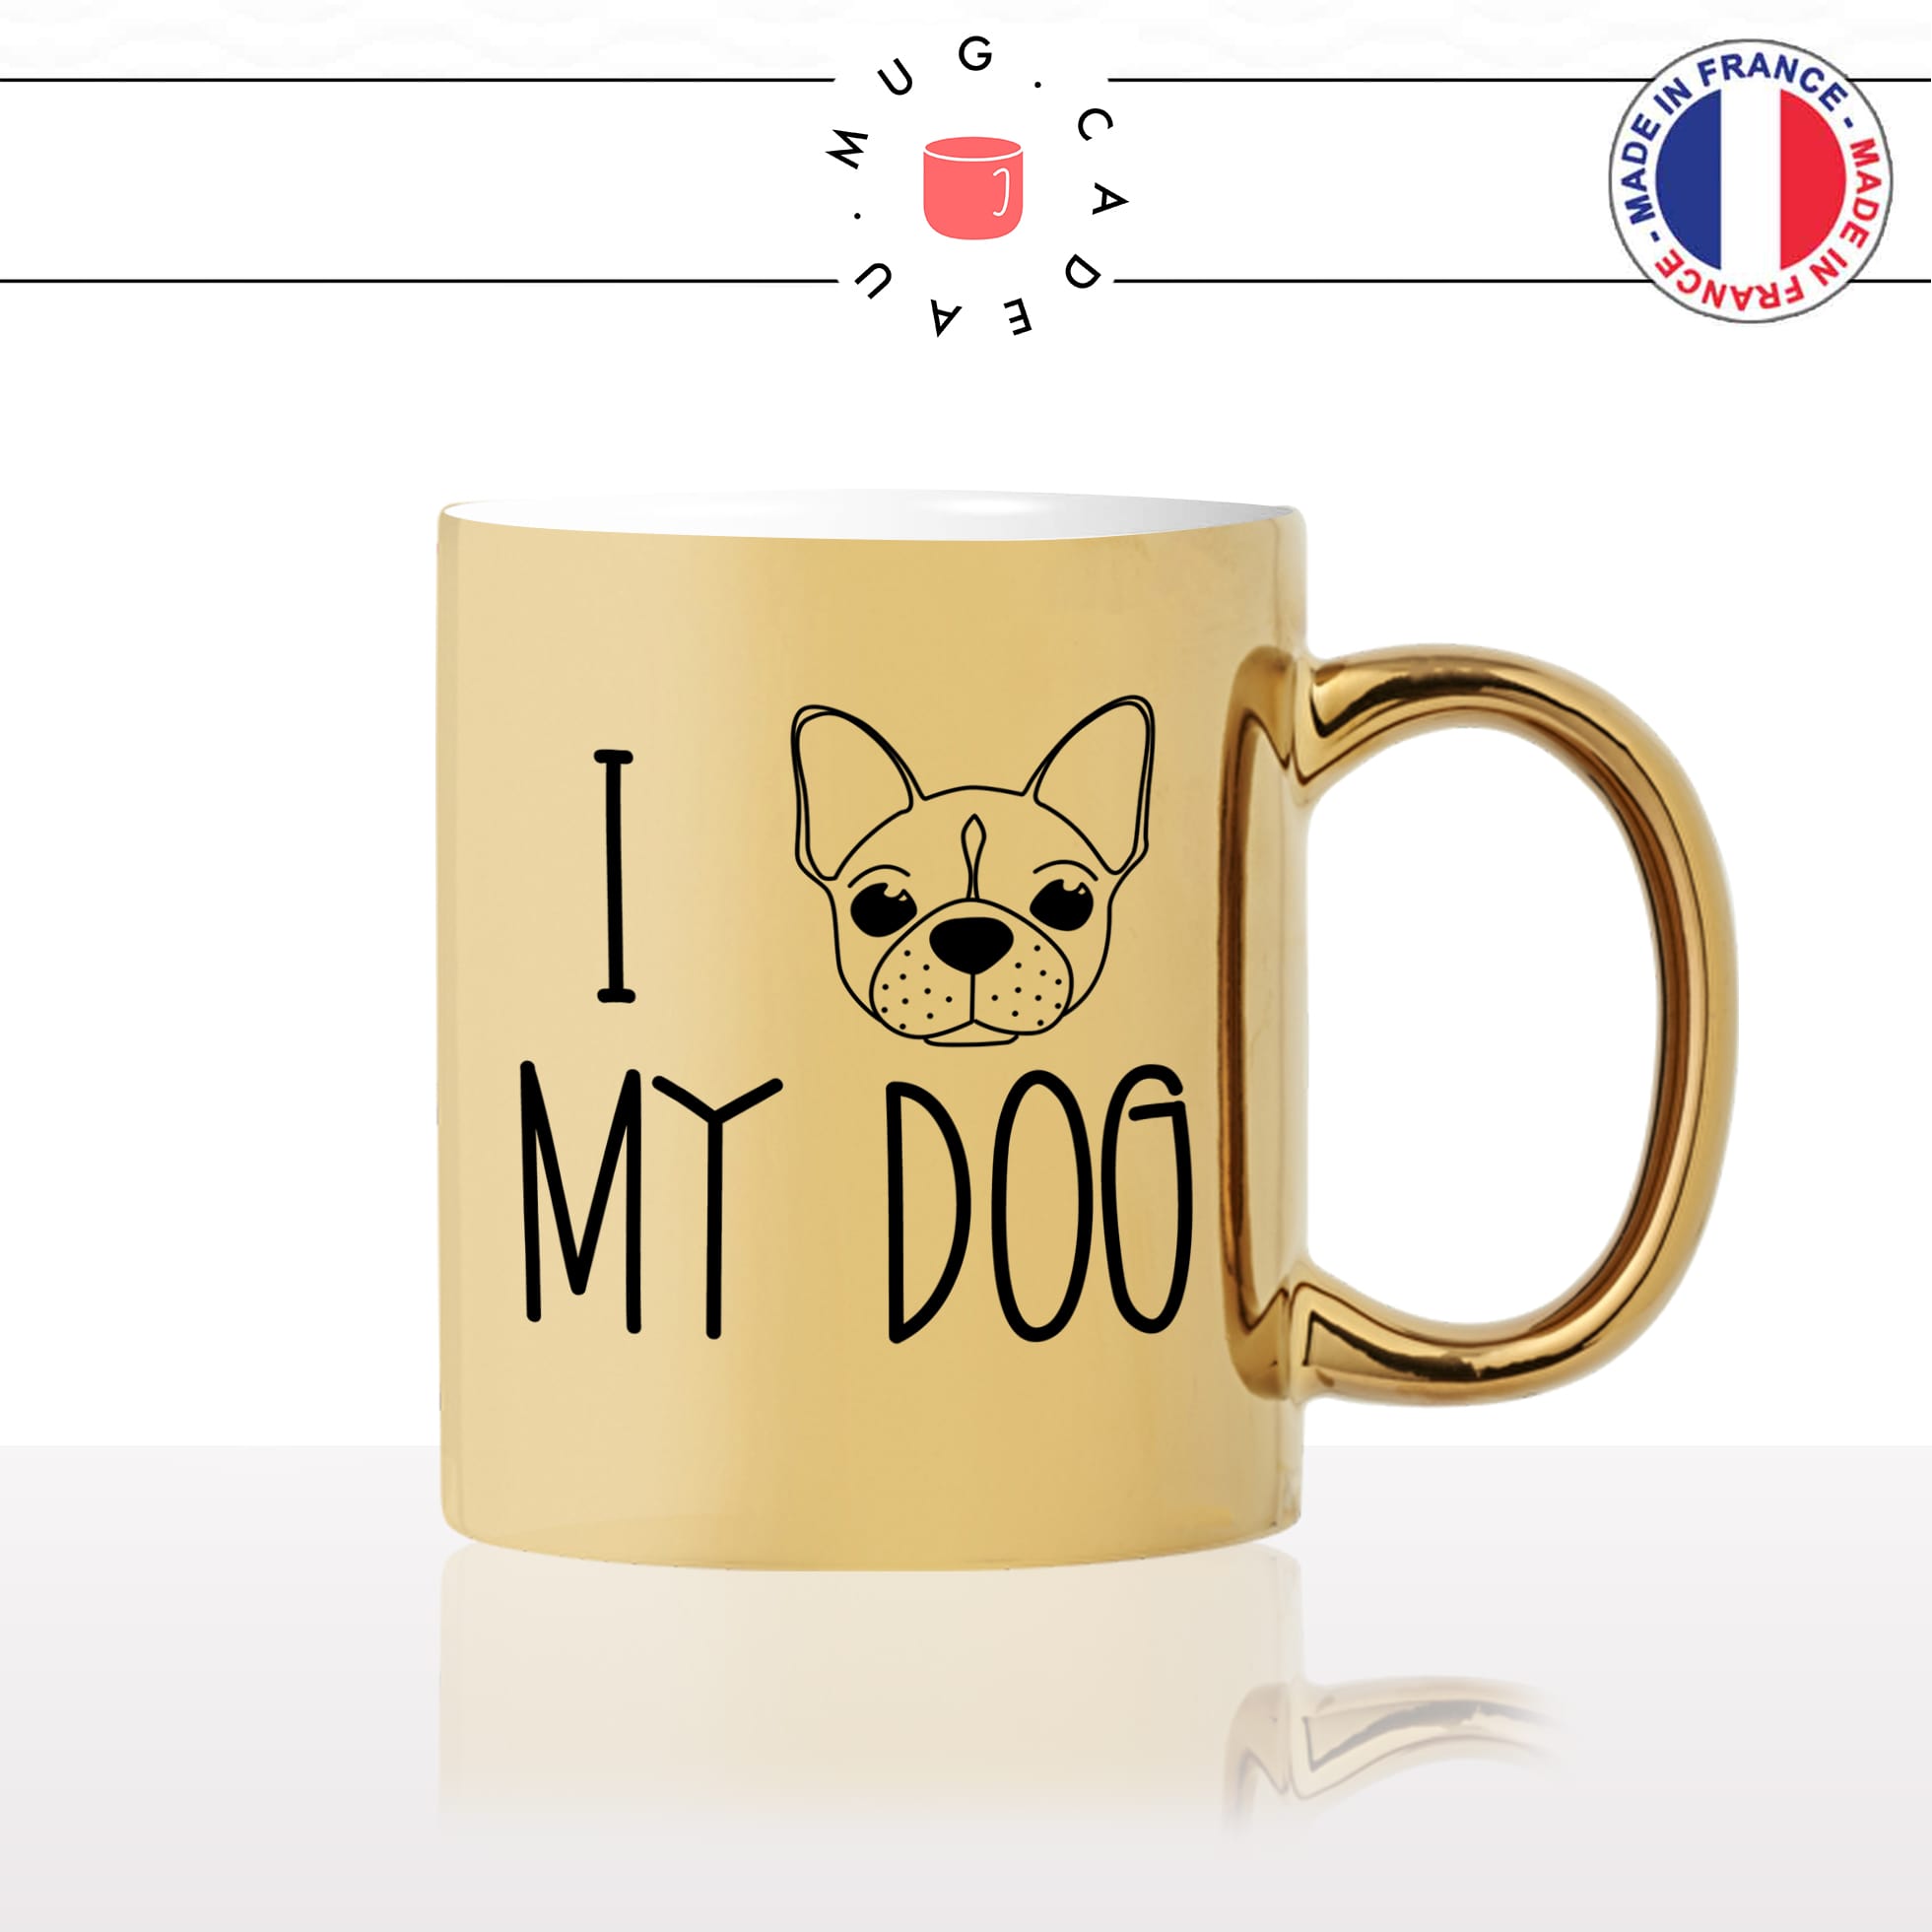 mug-tasse-or-doré-i-love-my-dog-tete-pug-chien-amour-mignon-animal-chiot-noir-fun-café-thé-idée-cadeau-original-personnalisé-gold2-min